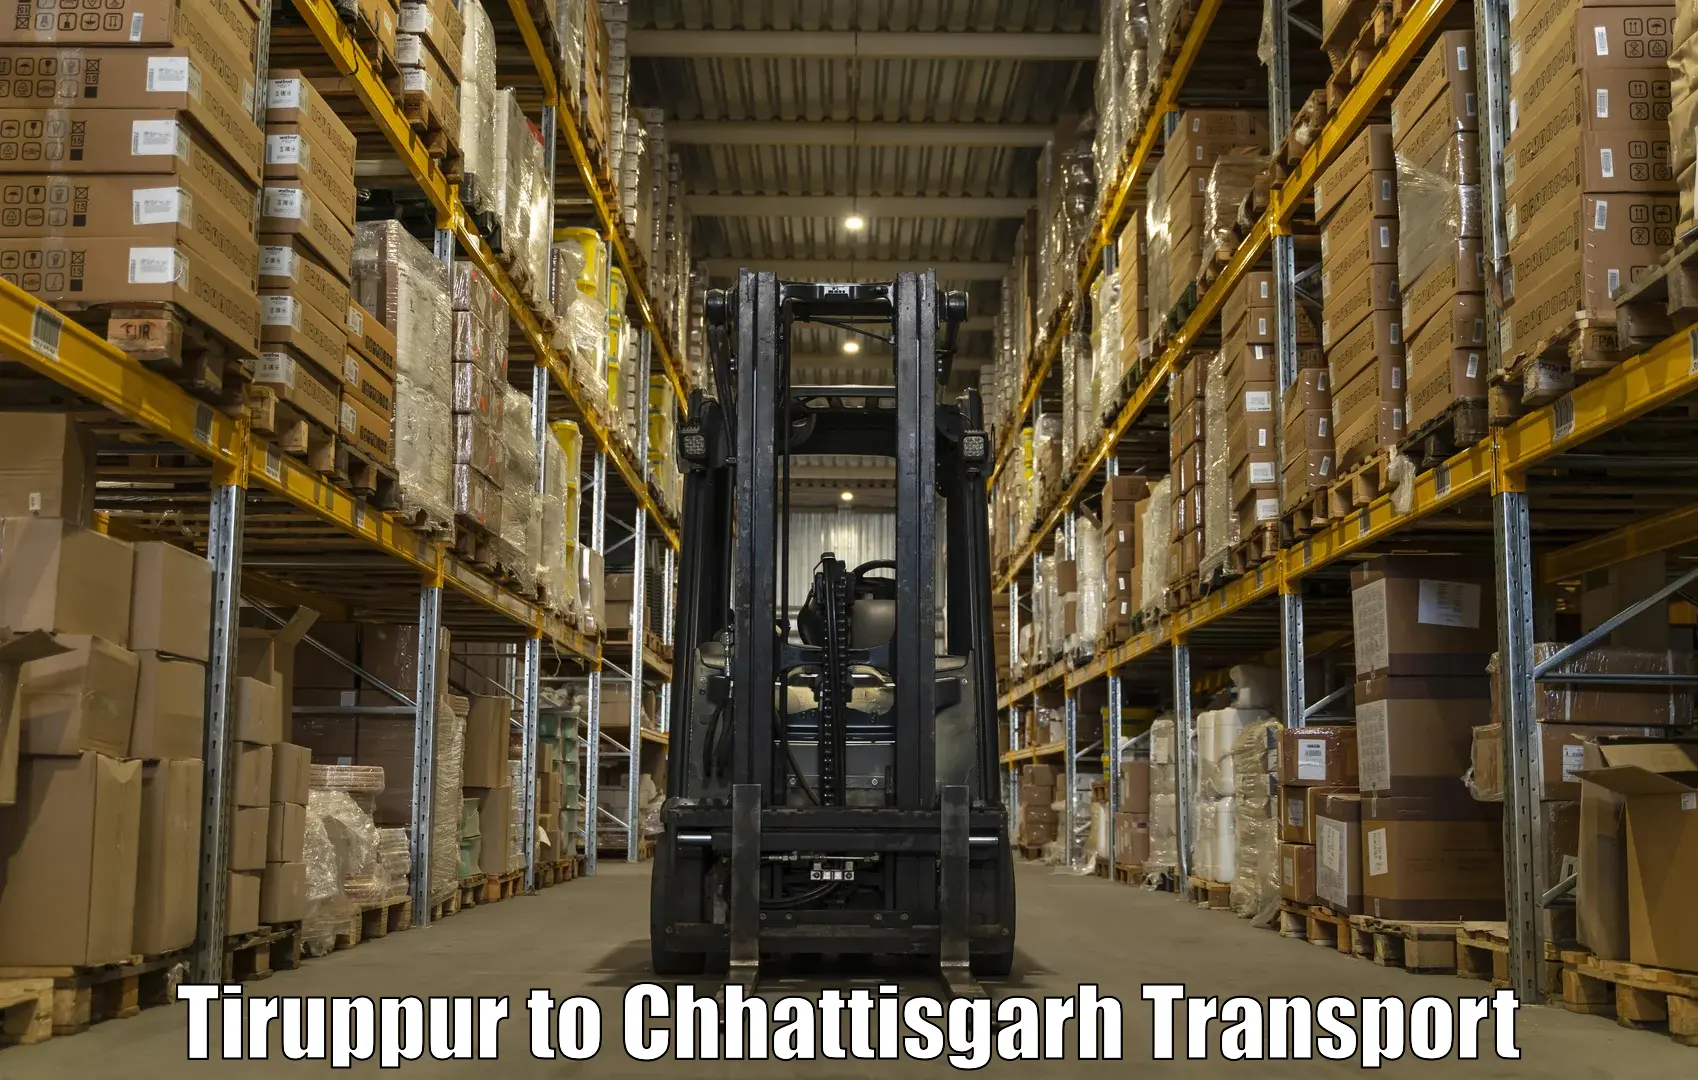 Nationwide transport services Tiruppur to Bijapur Chhattisgarh